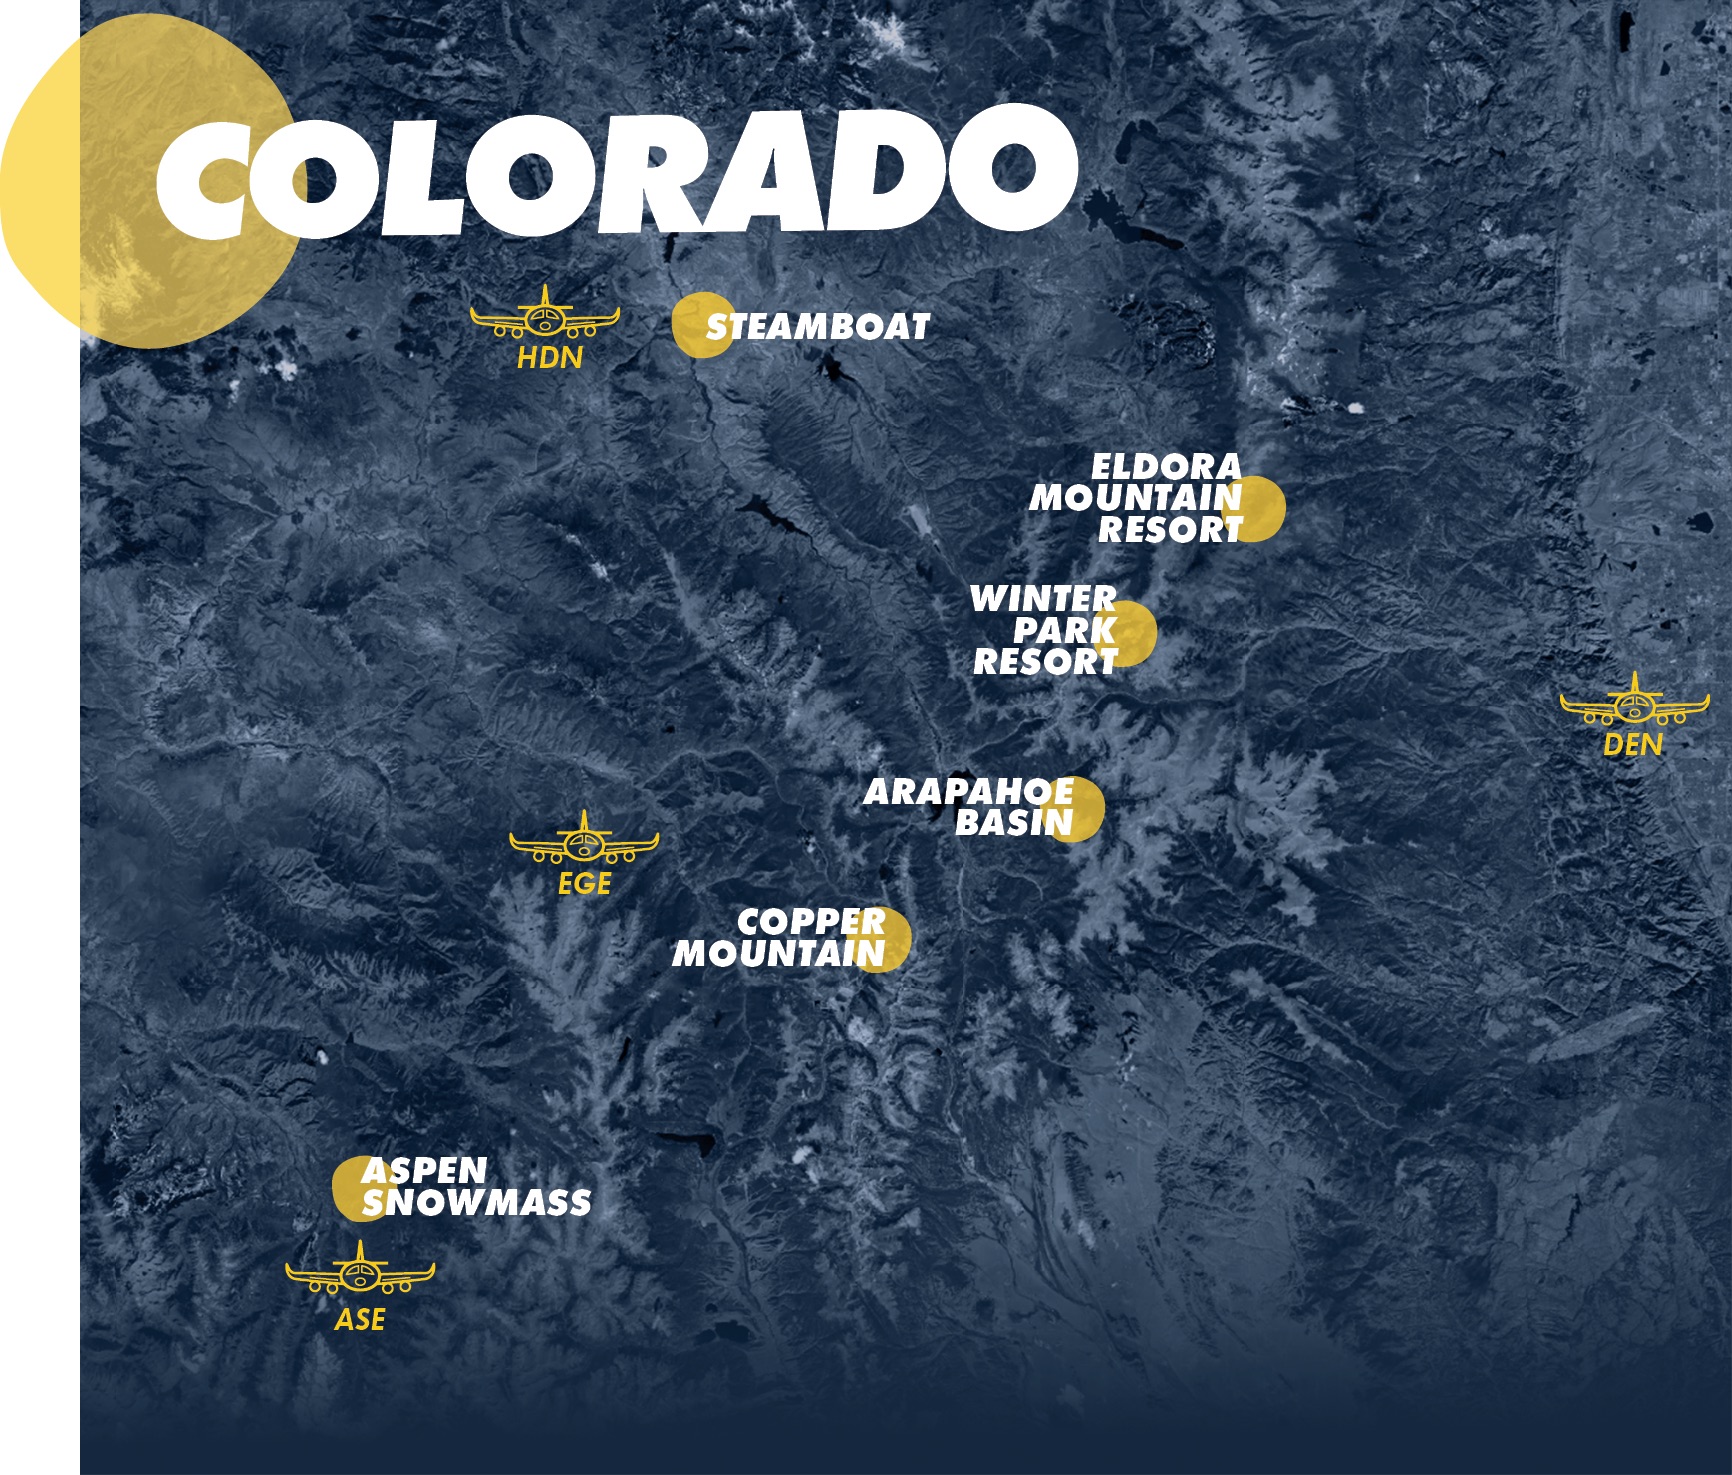 Ikon Pass destinations in Colorado.